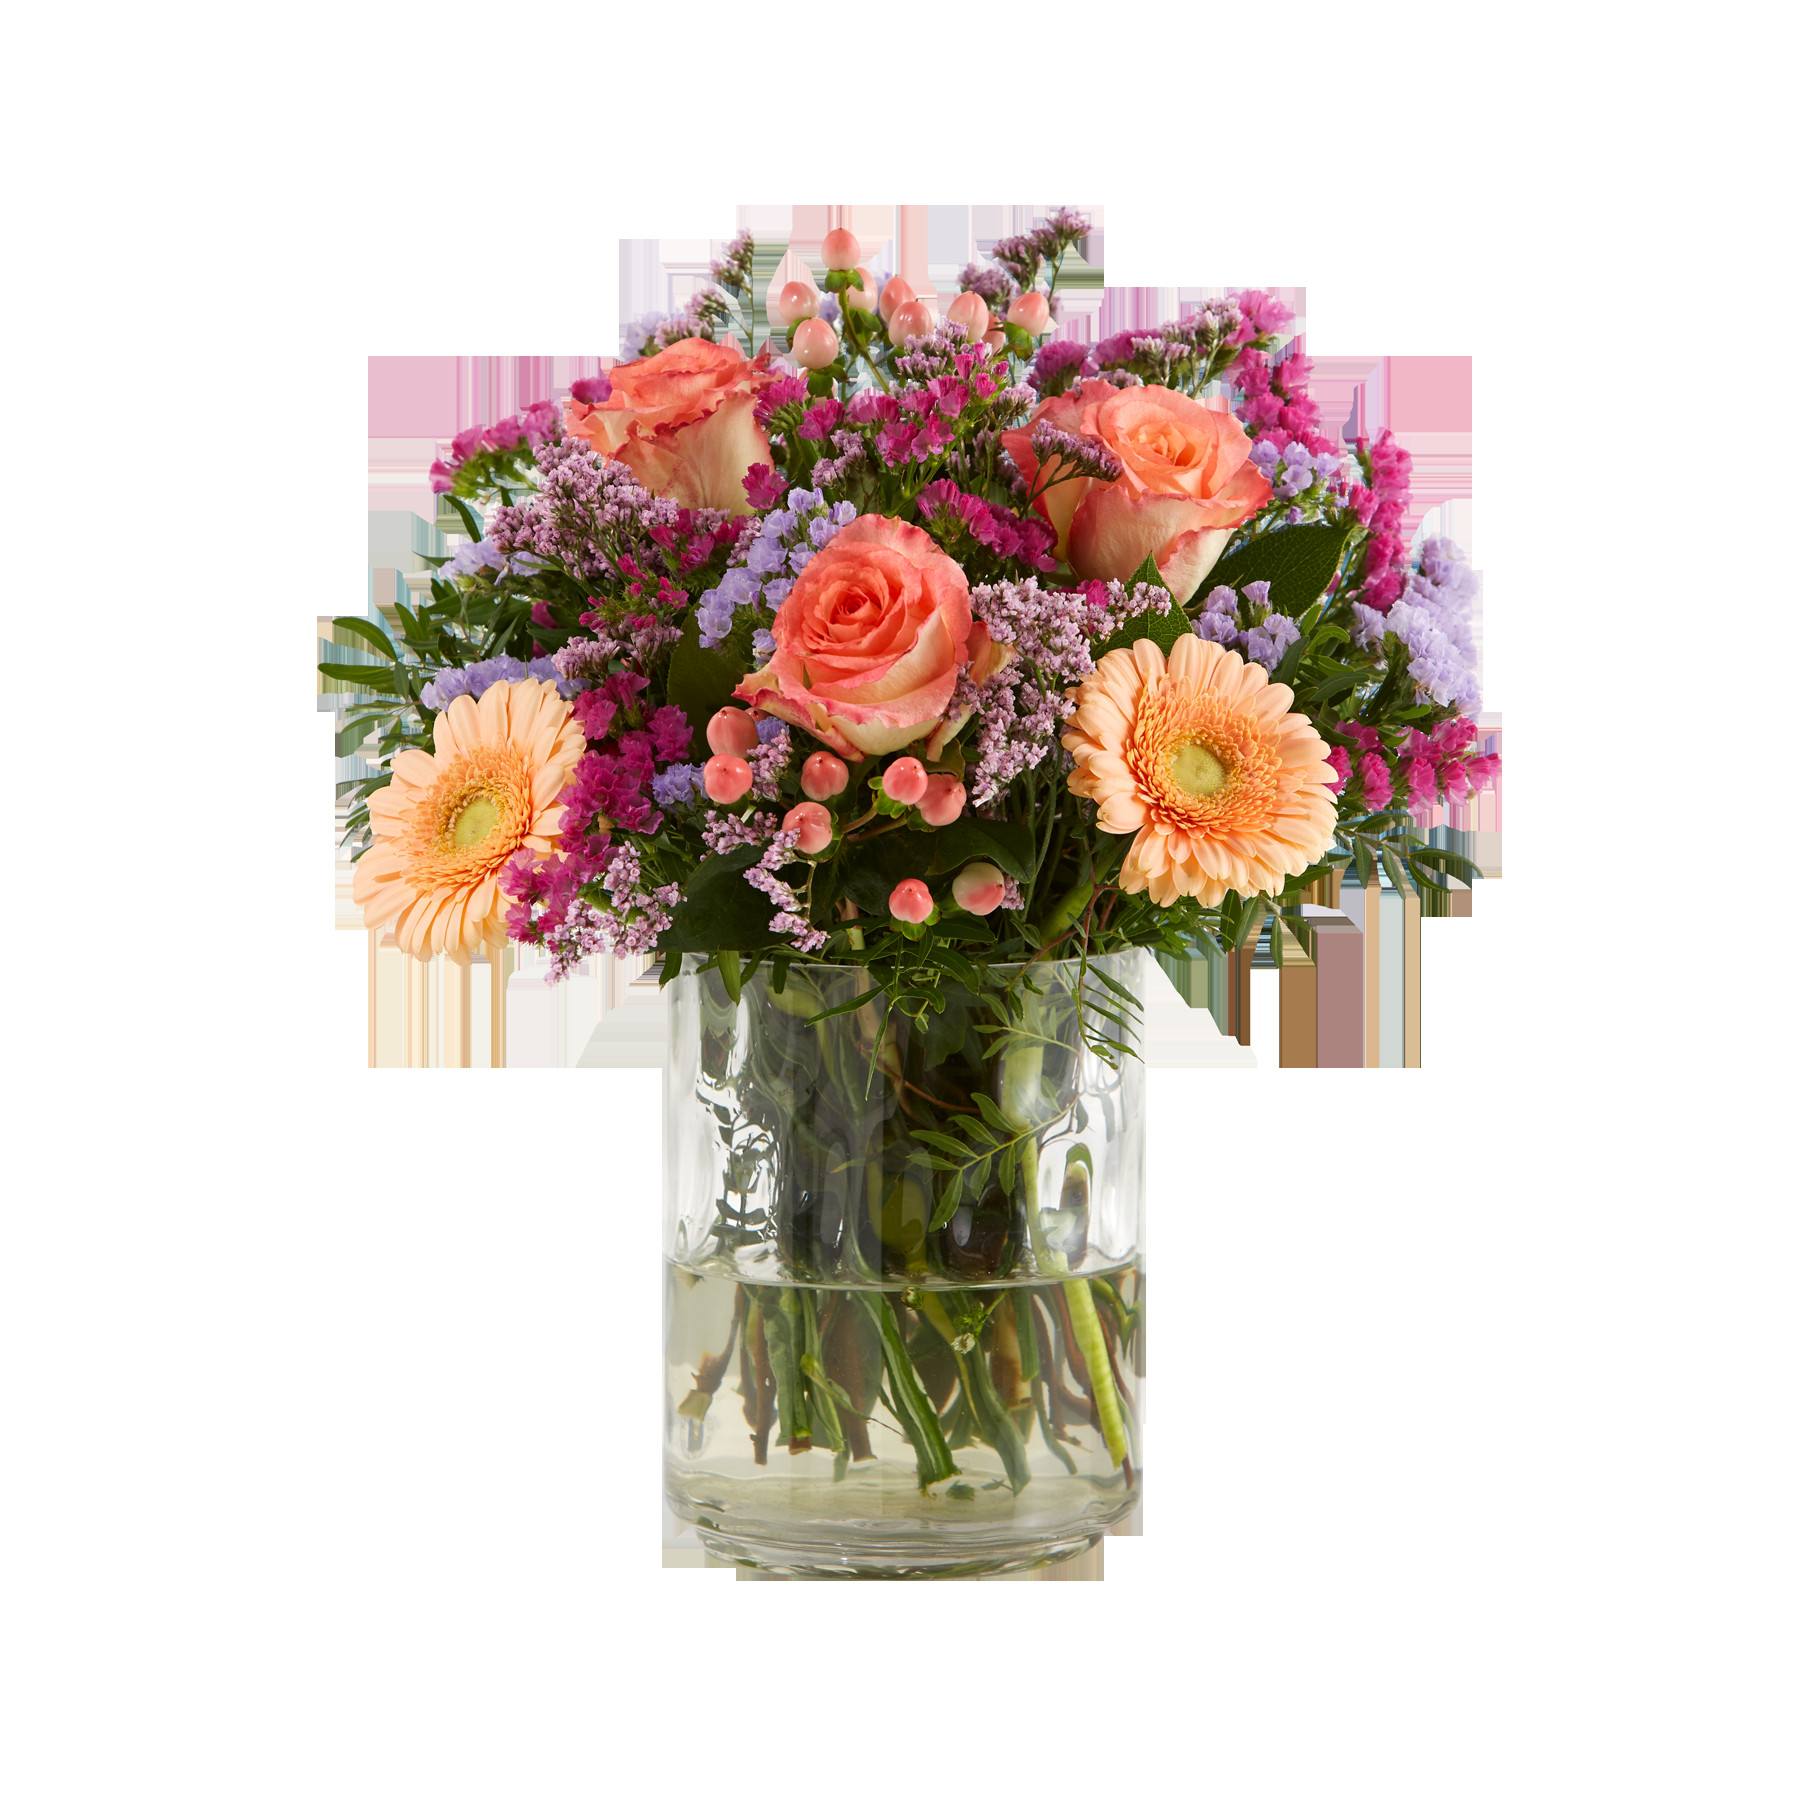 Blumen Geburtstag
 Blumen zum Geburtstag › Blumenversand Vergleich